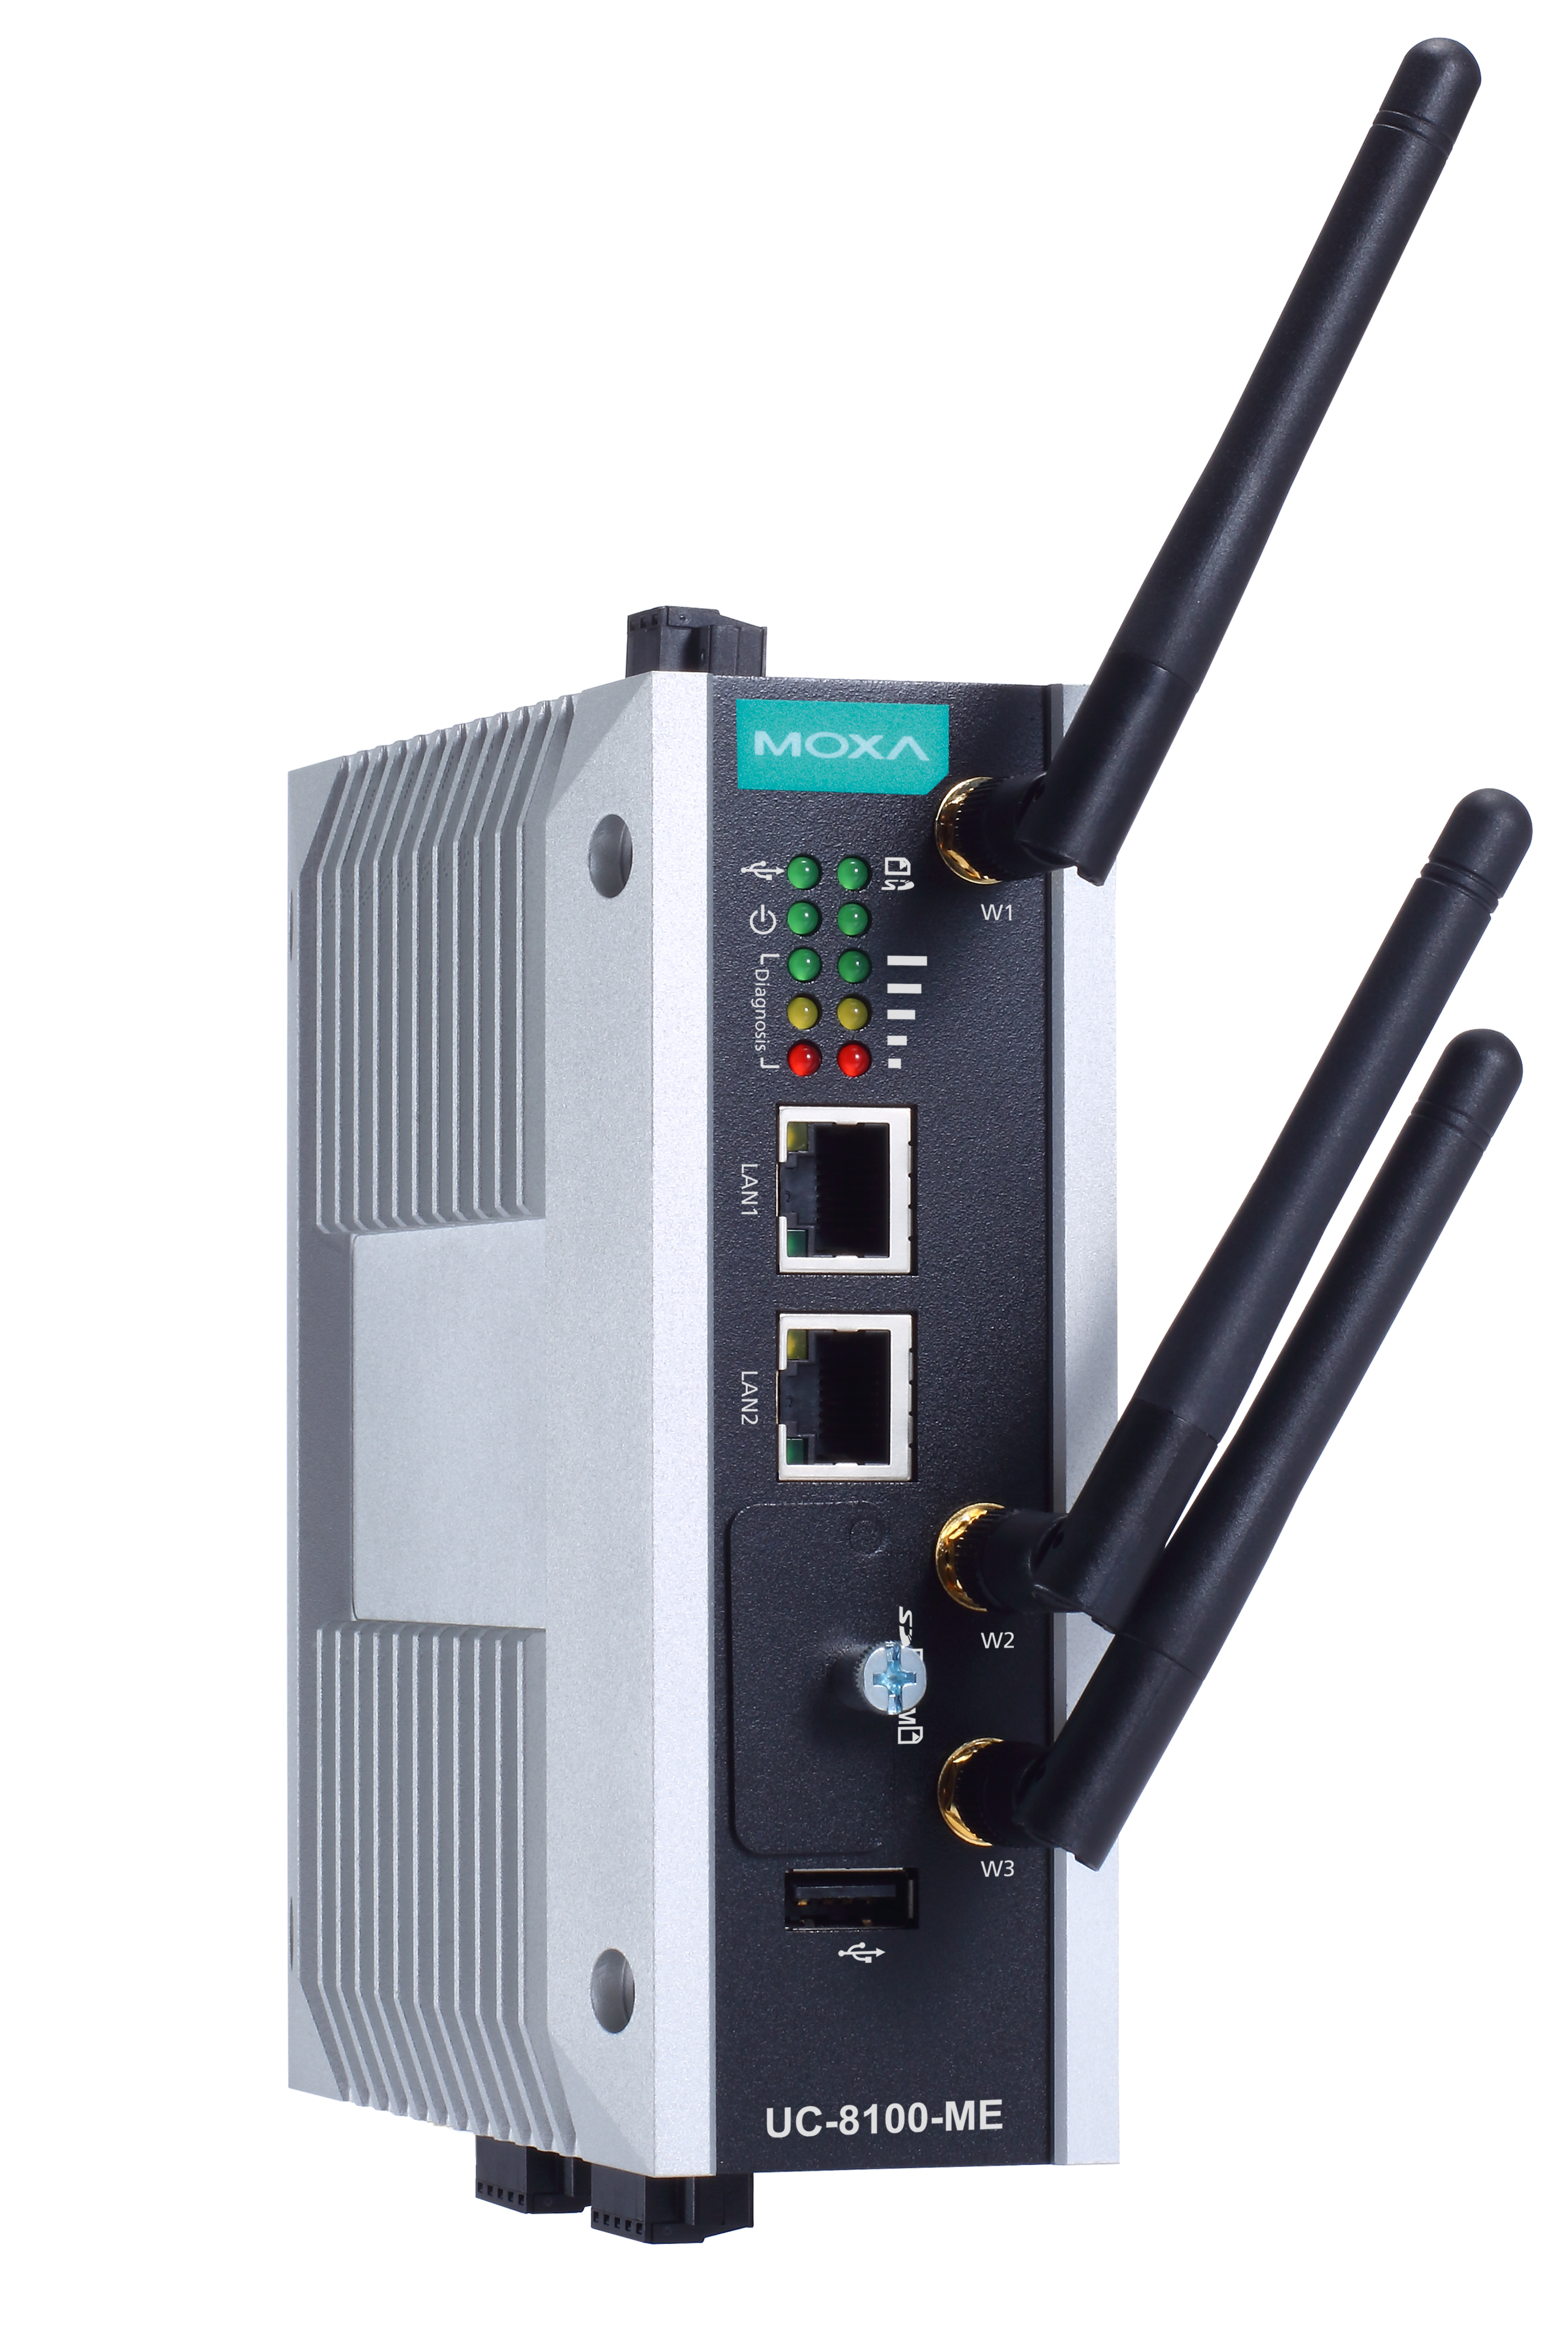 Moxa представила новый промышленный 4G LTE IoT шлюз UC-8100-ME-T